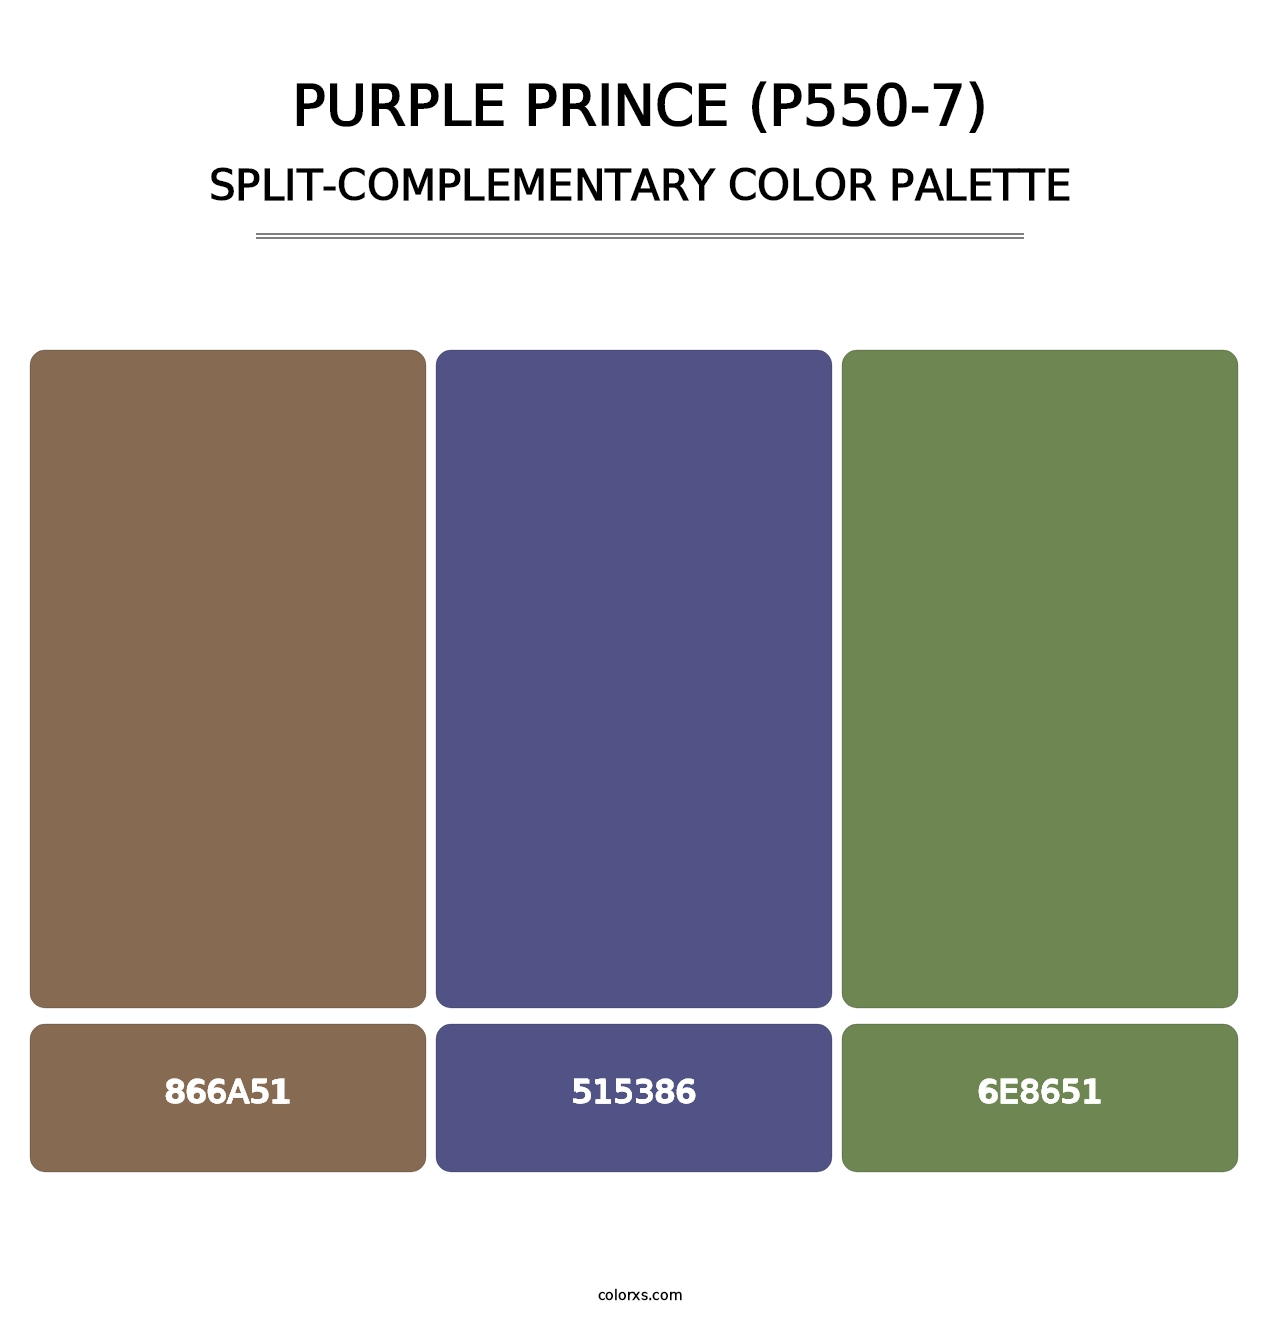 Purple Prince (P550-7) - Split-Complementary Color Palette